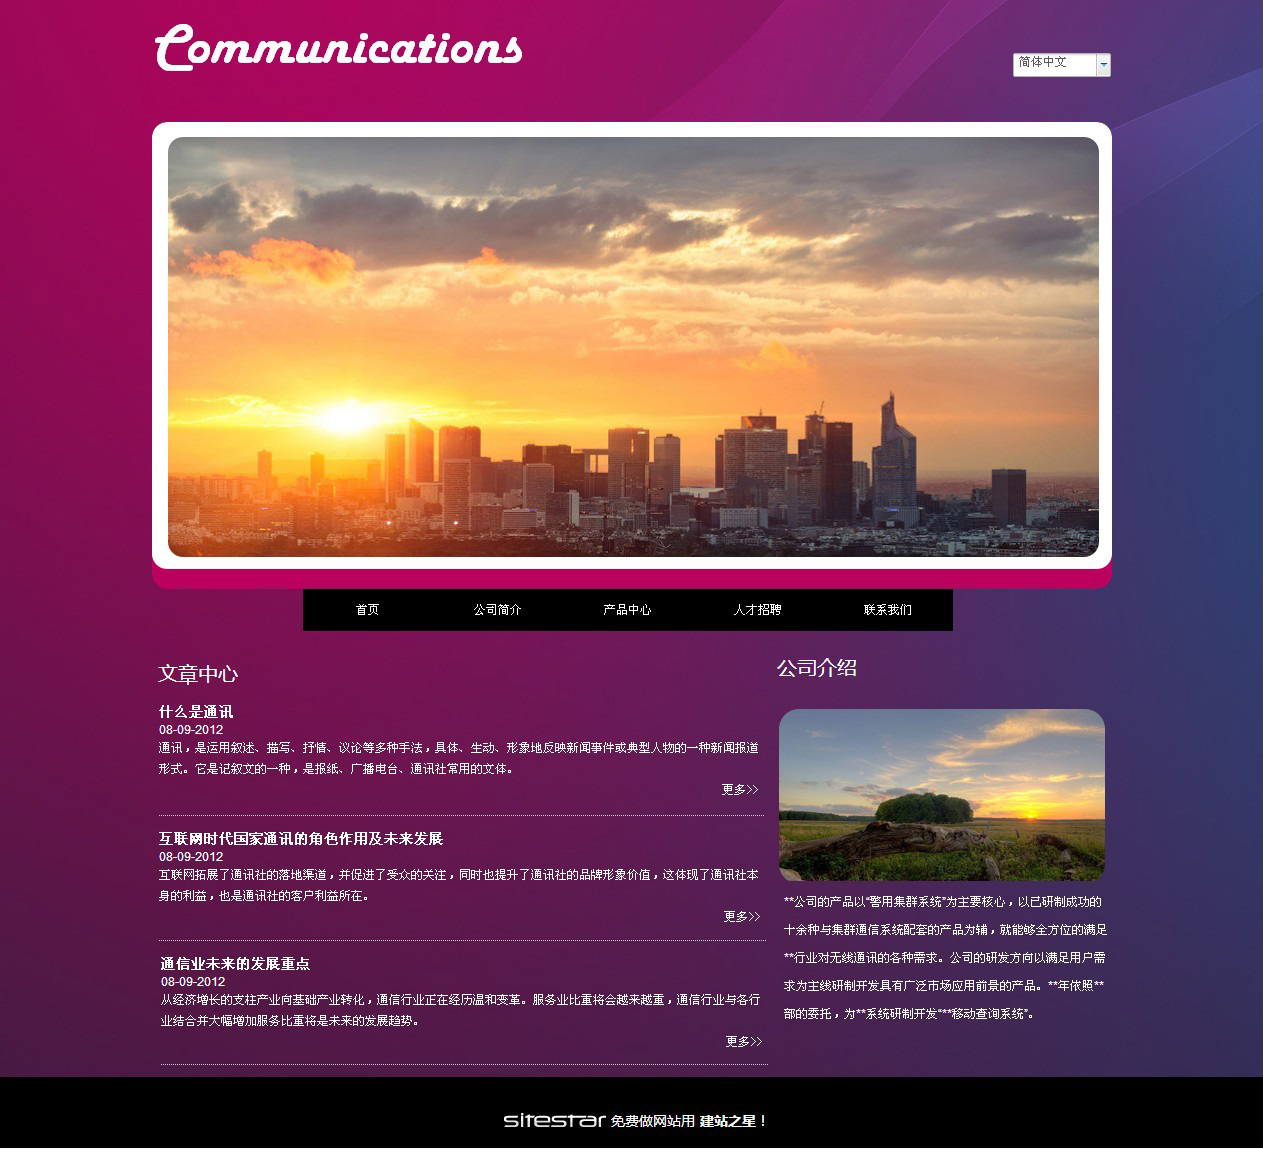 通讯、数码网站模板-communications-7